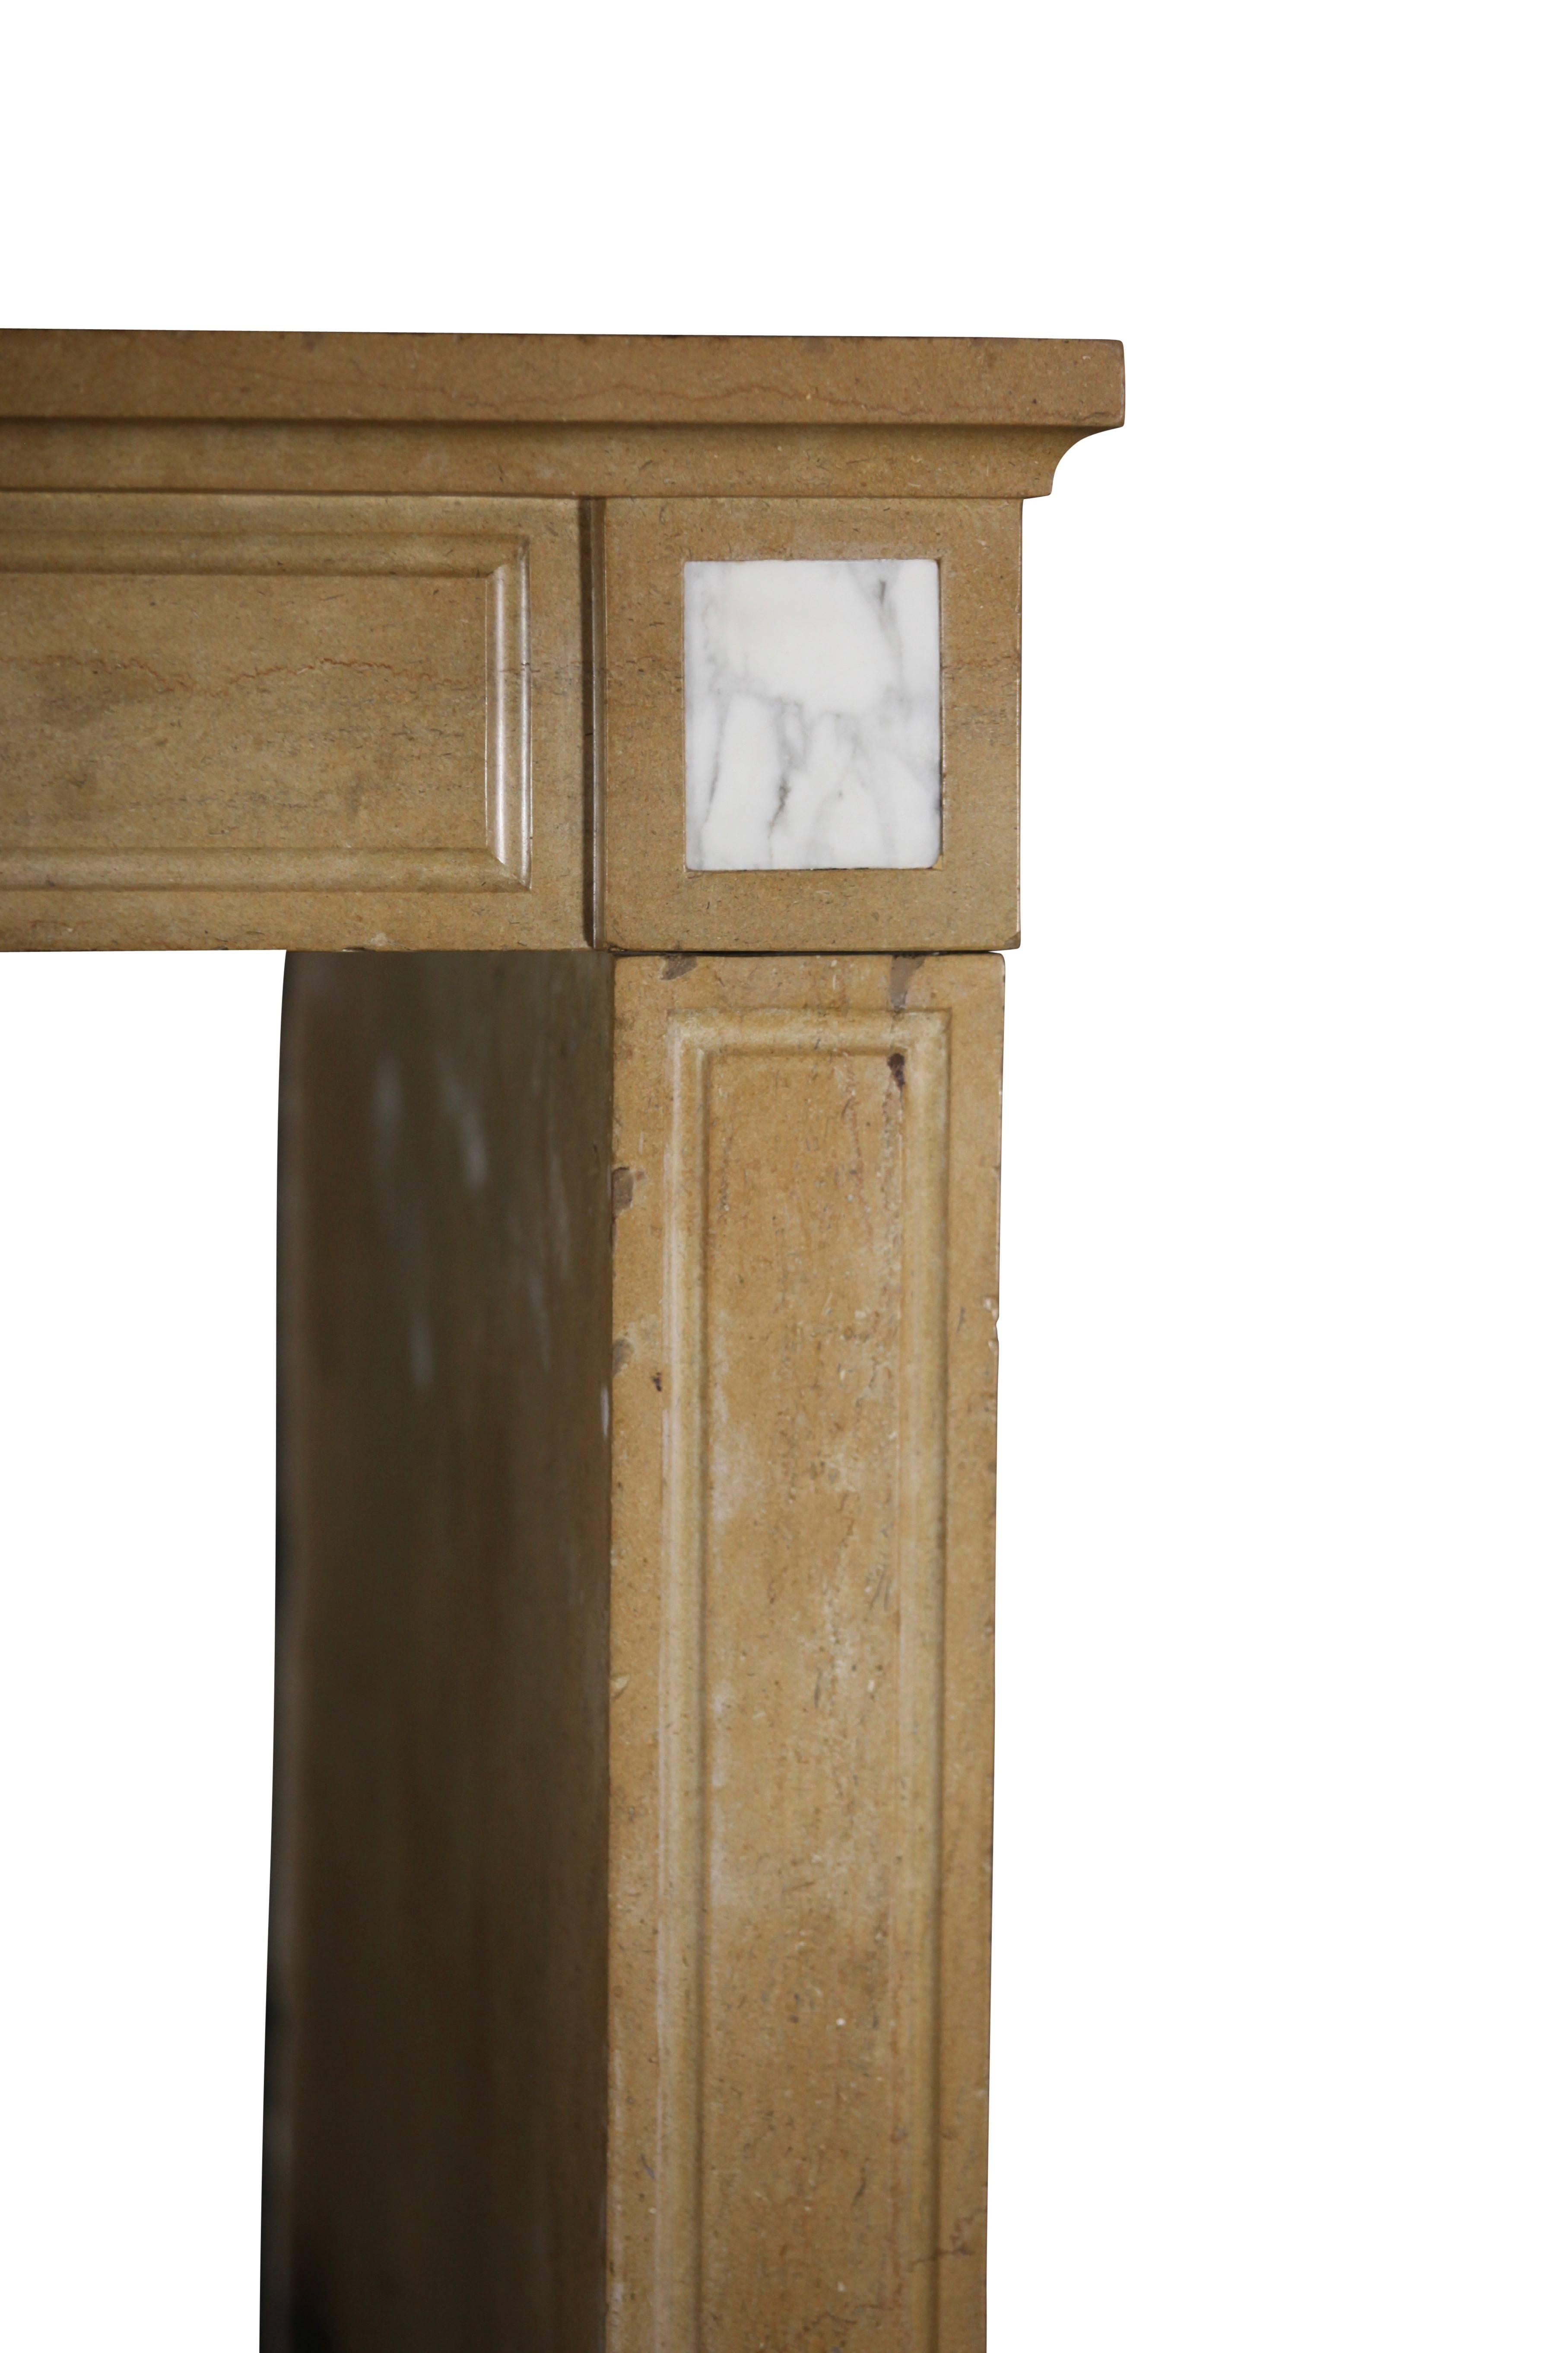 Diese Original-Kamineinfassung aus Hartstein mit Einlagen aus Carrara-Marmor aus dem frühen 19. Jahrhundert wurde in der Region Burgund in Frankreich installiert. Die extra tiefen Beine mit Seitenteil sind für einen umlaufenden Kaminsims